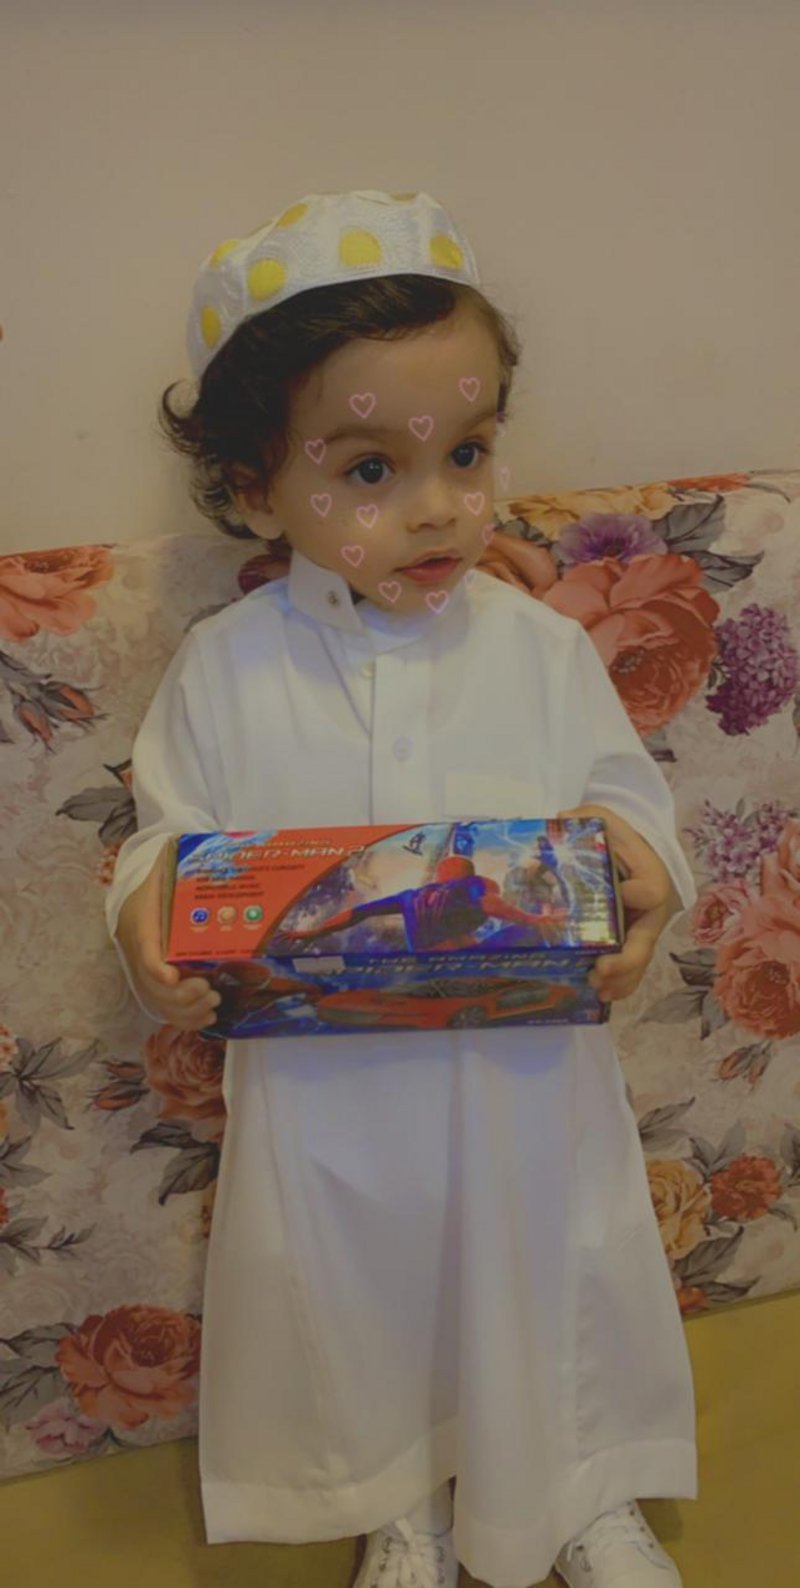  وفاة طفل سعودى بعد انكسار ابرة مسحة  كورونا فى انفه 